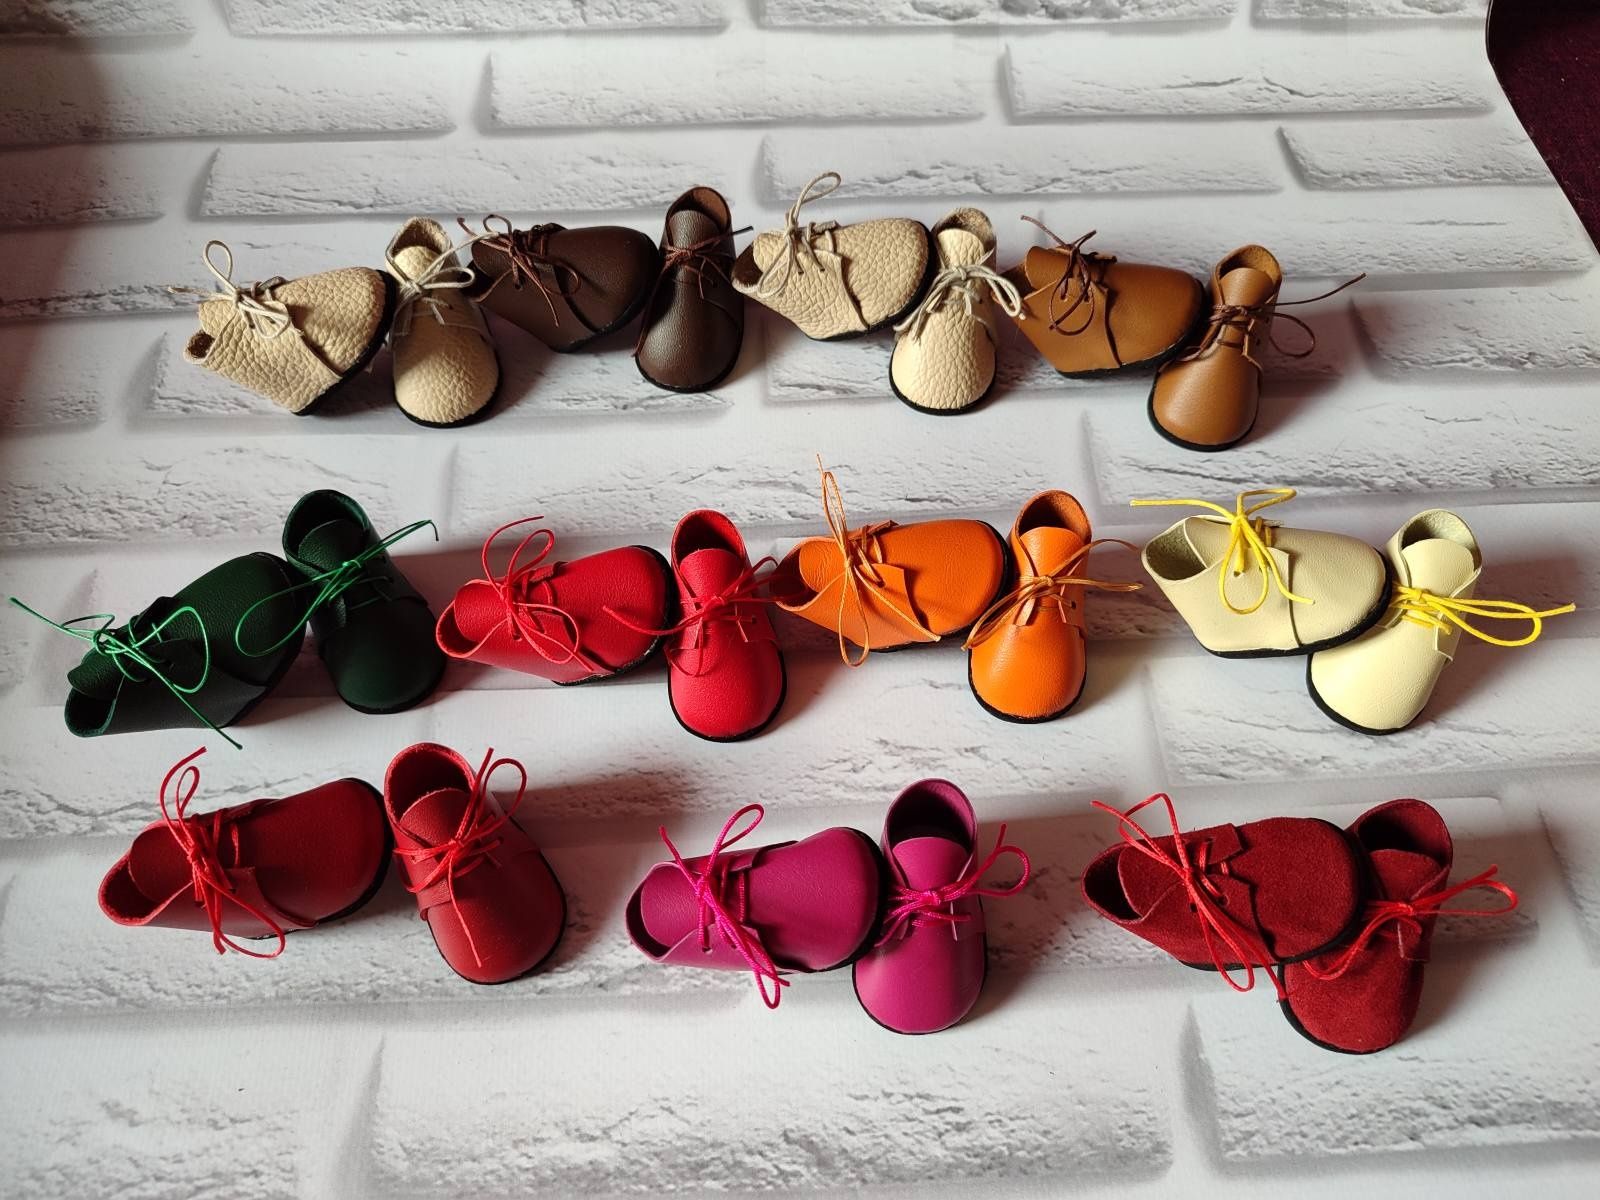 Ботиночки обувь для куклы Паолы из натуральной кожи